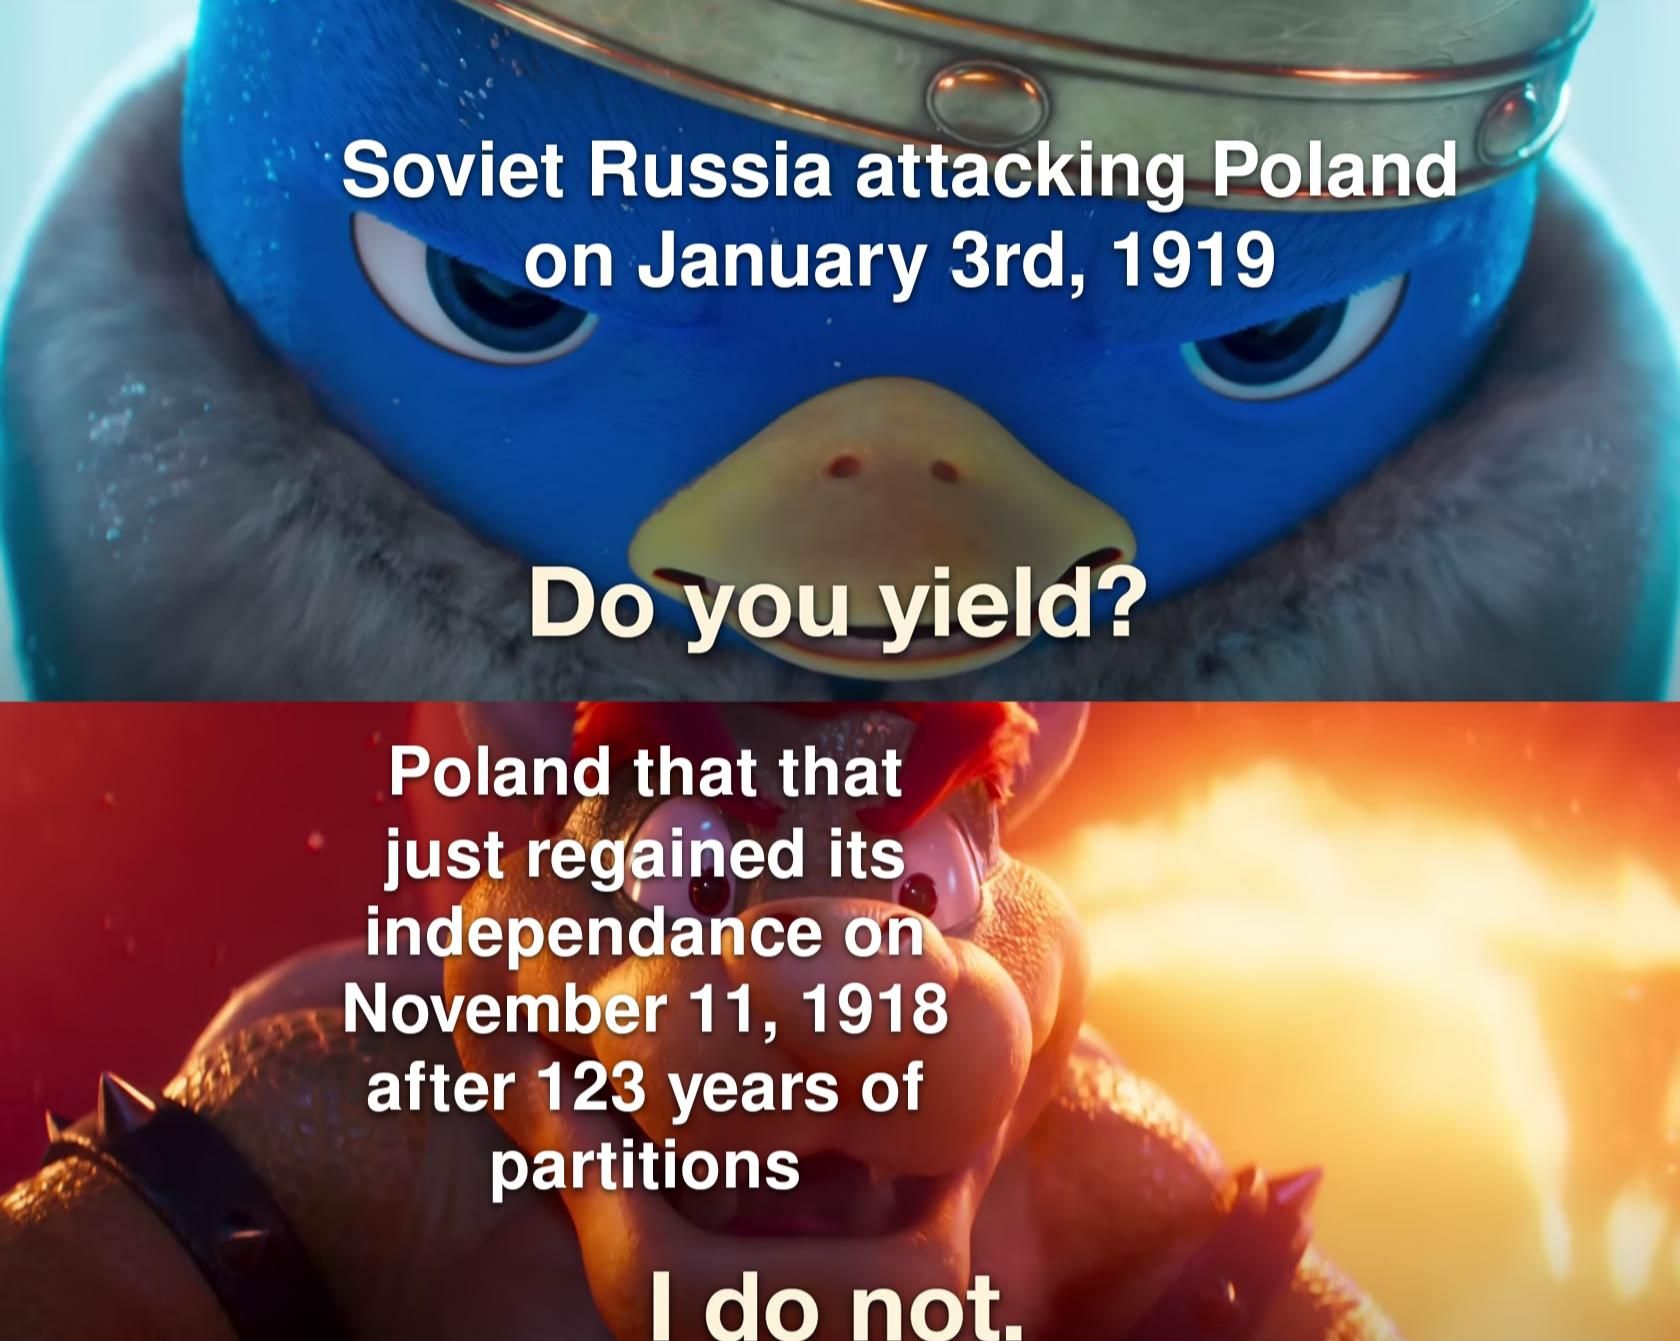 Polish-Soviet war was pretty wild